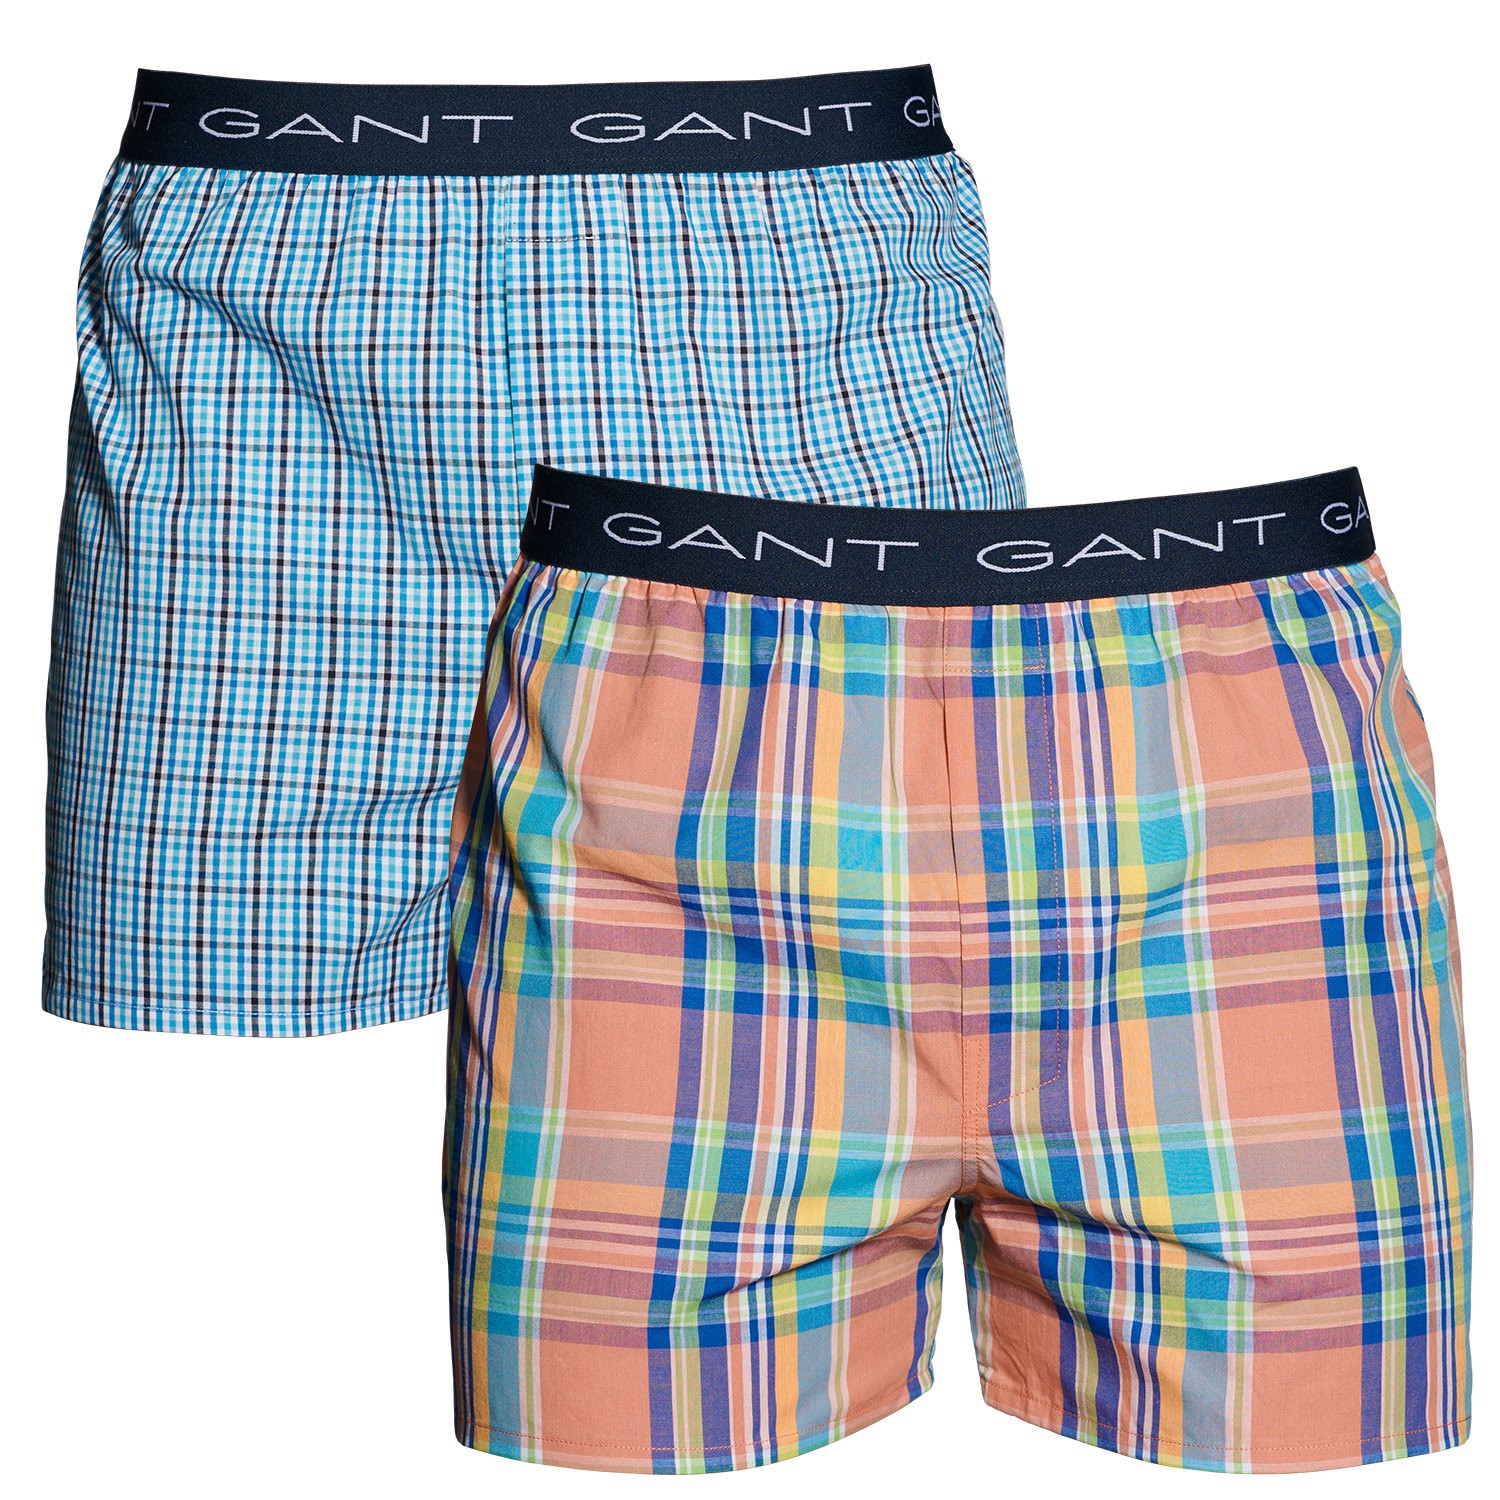 Gant Essentials Woven Cotton Boxer Shorts